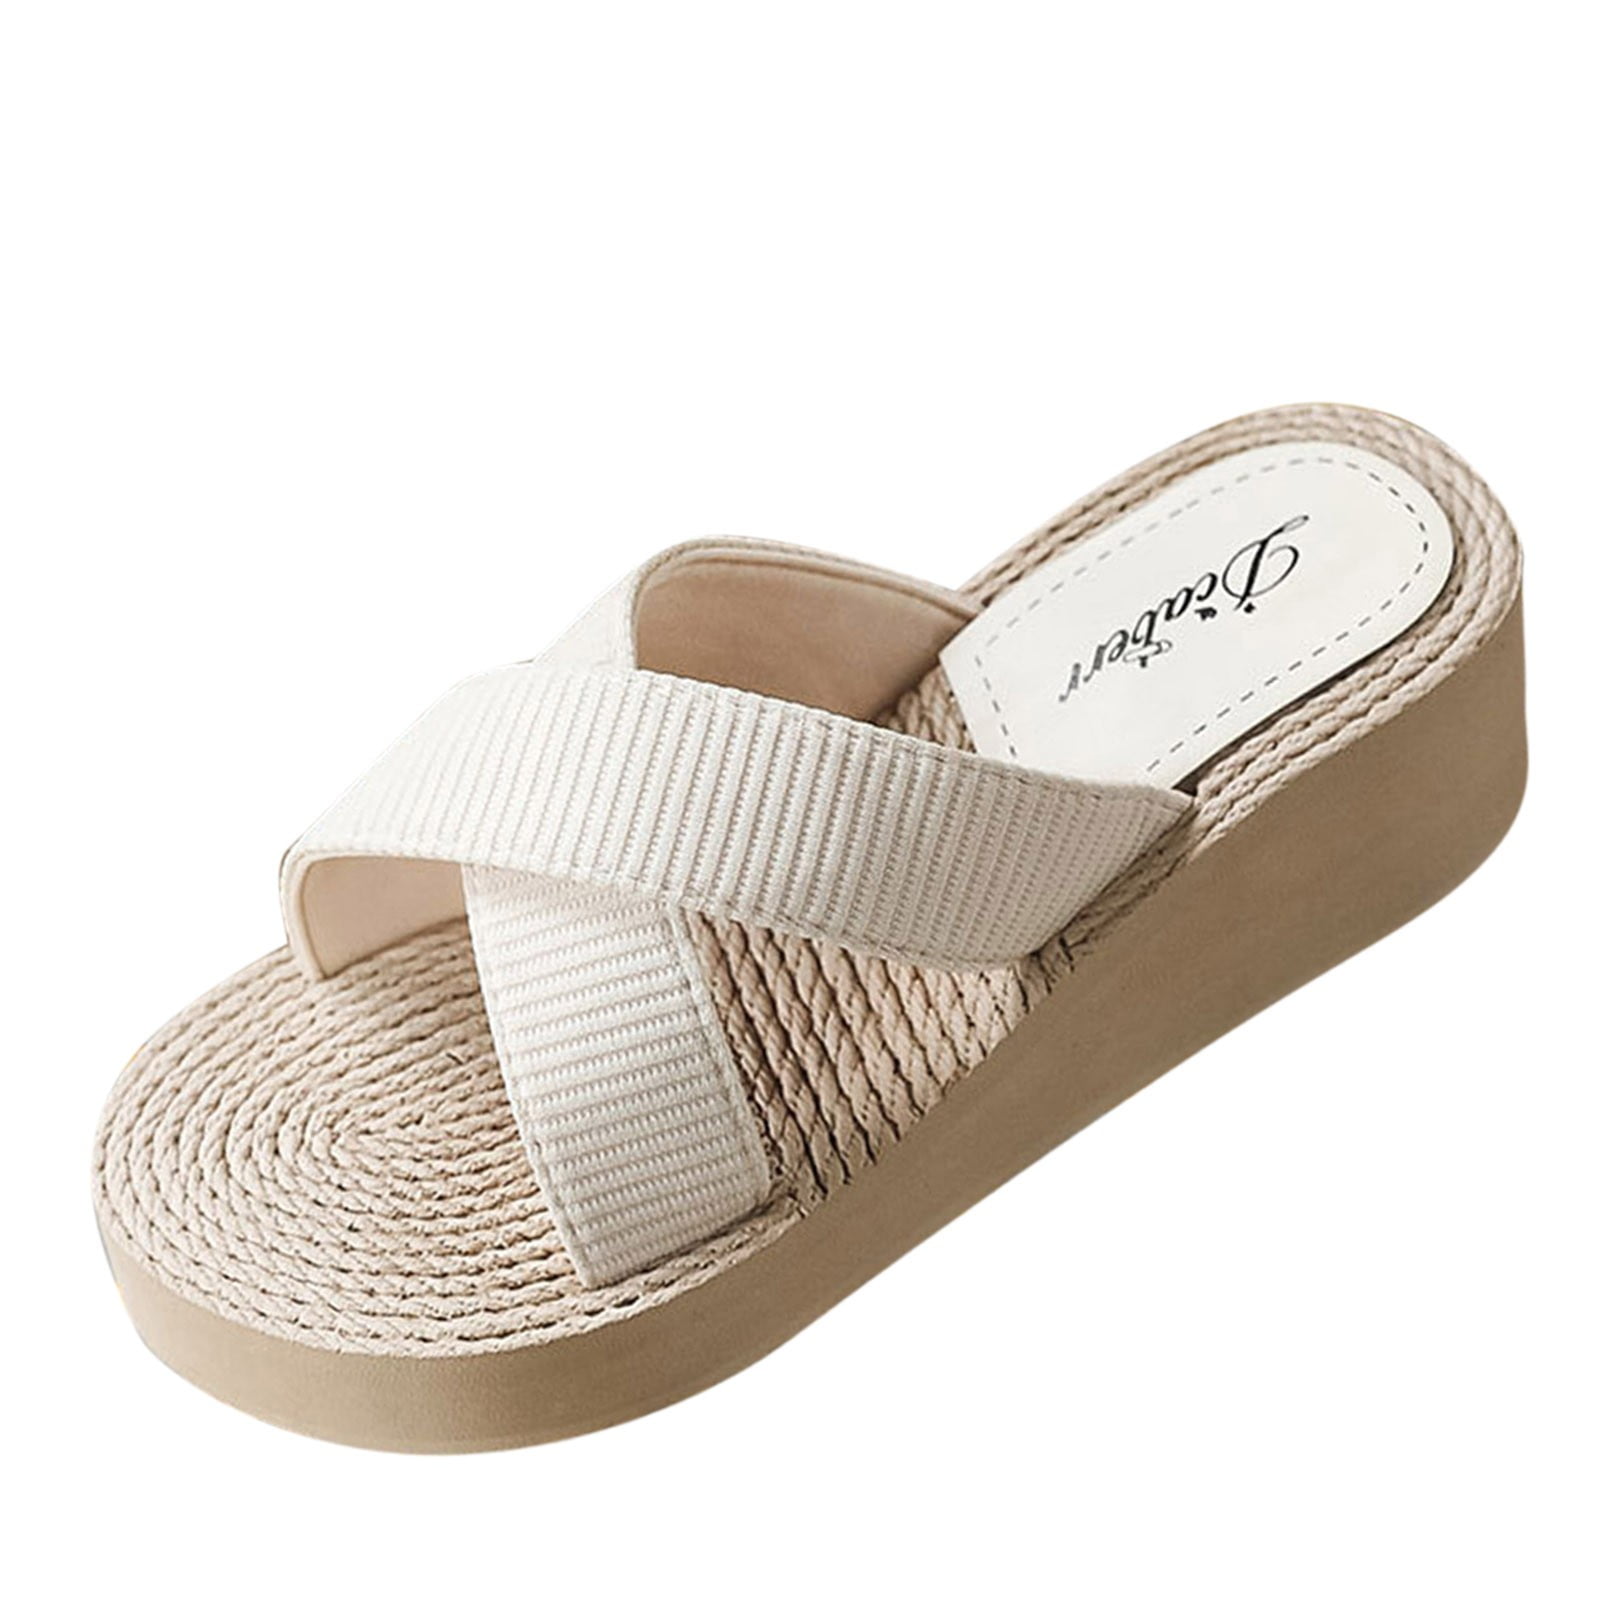 HSMQHJWE Womens Platform Wedge Sandals Espadrilles Braided Open Toe Slip On  Summer Mule High Brown Heels Sandal Shoes（Beige,7) 